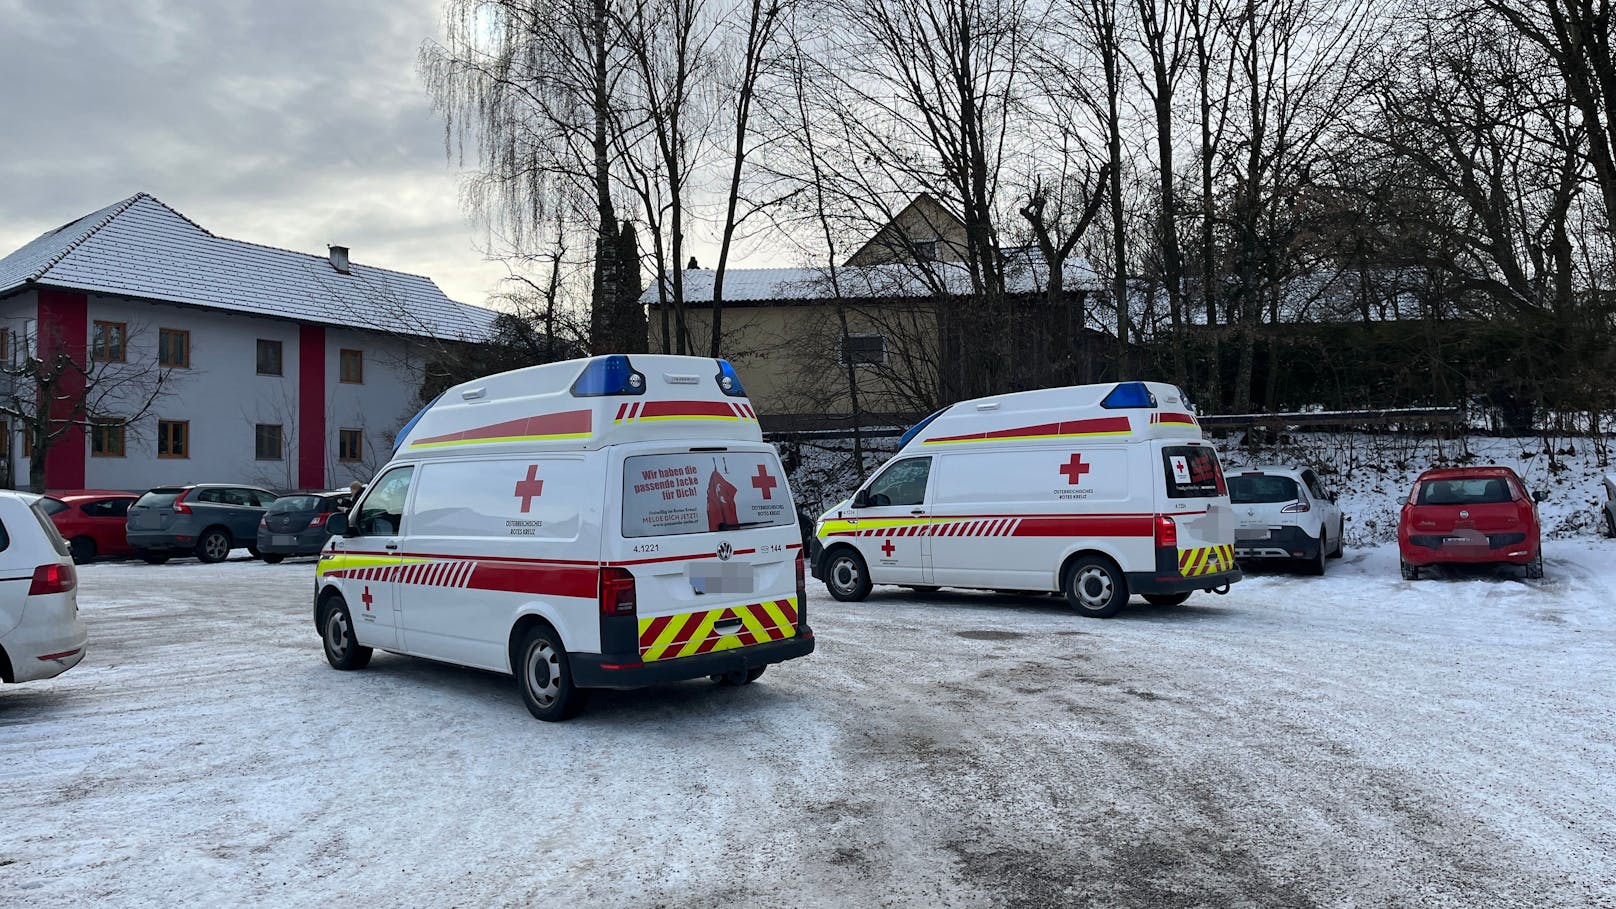 Laut Rotes Kreuz waren fünf Rettungswagen, ein Notarzt-Auto und ein Hubschrauber im Einsatz.